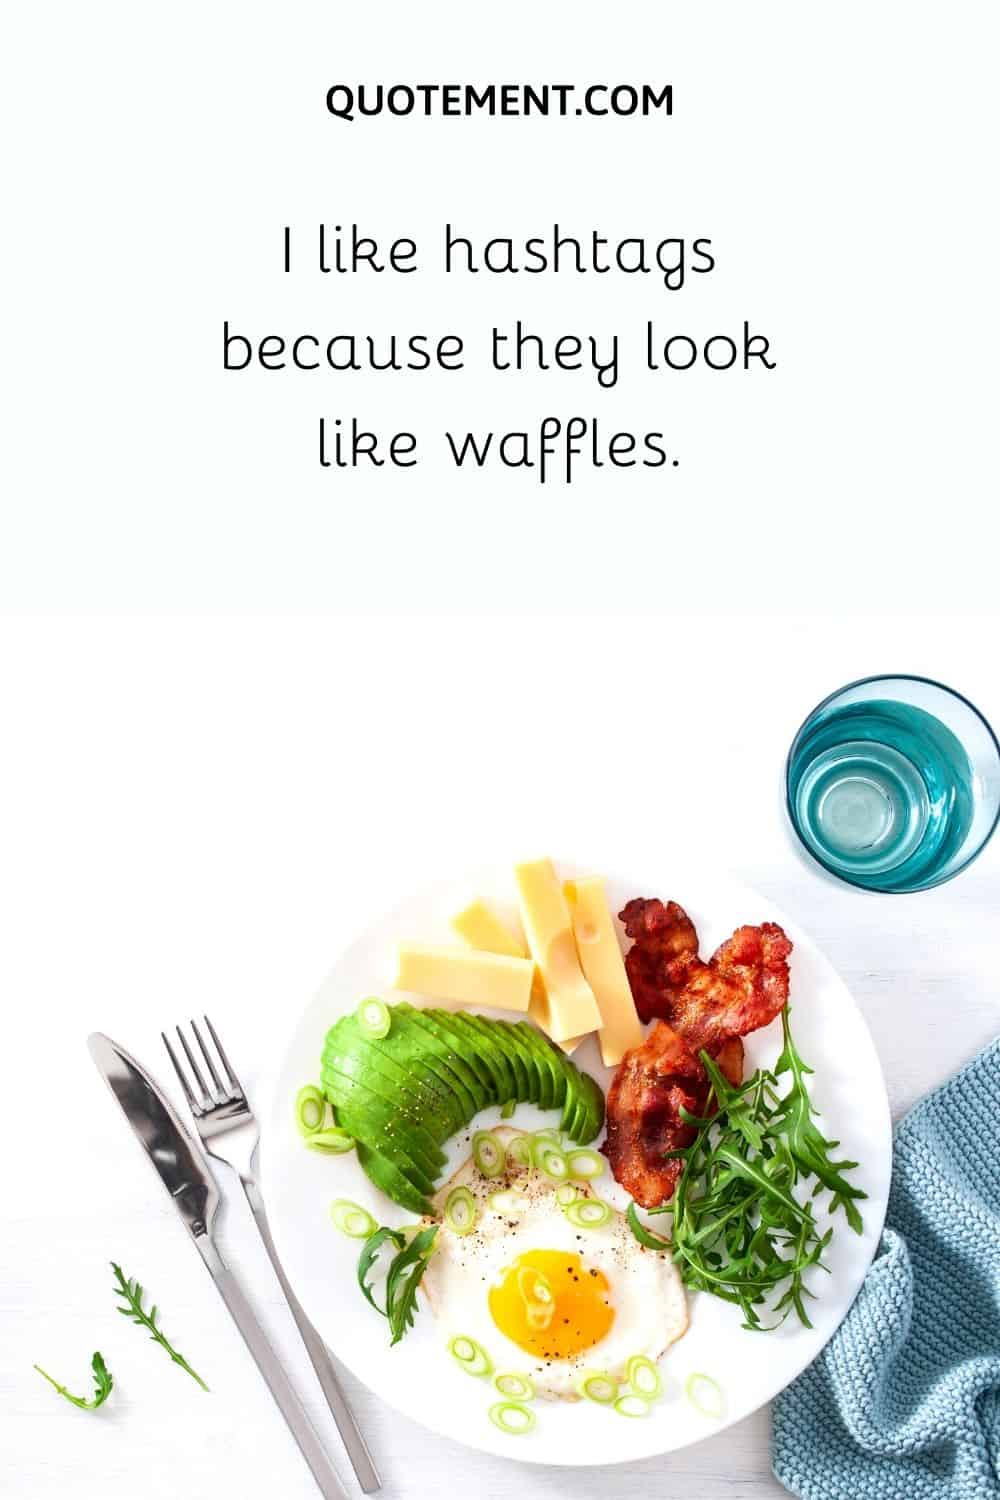 I like hashtags because they look like waffles.